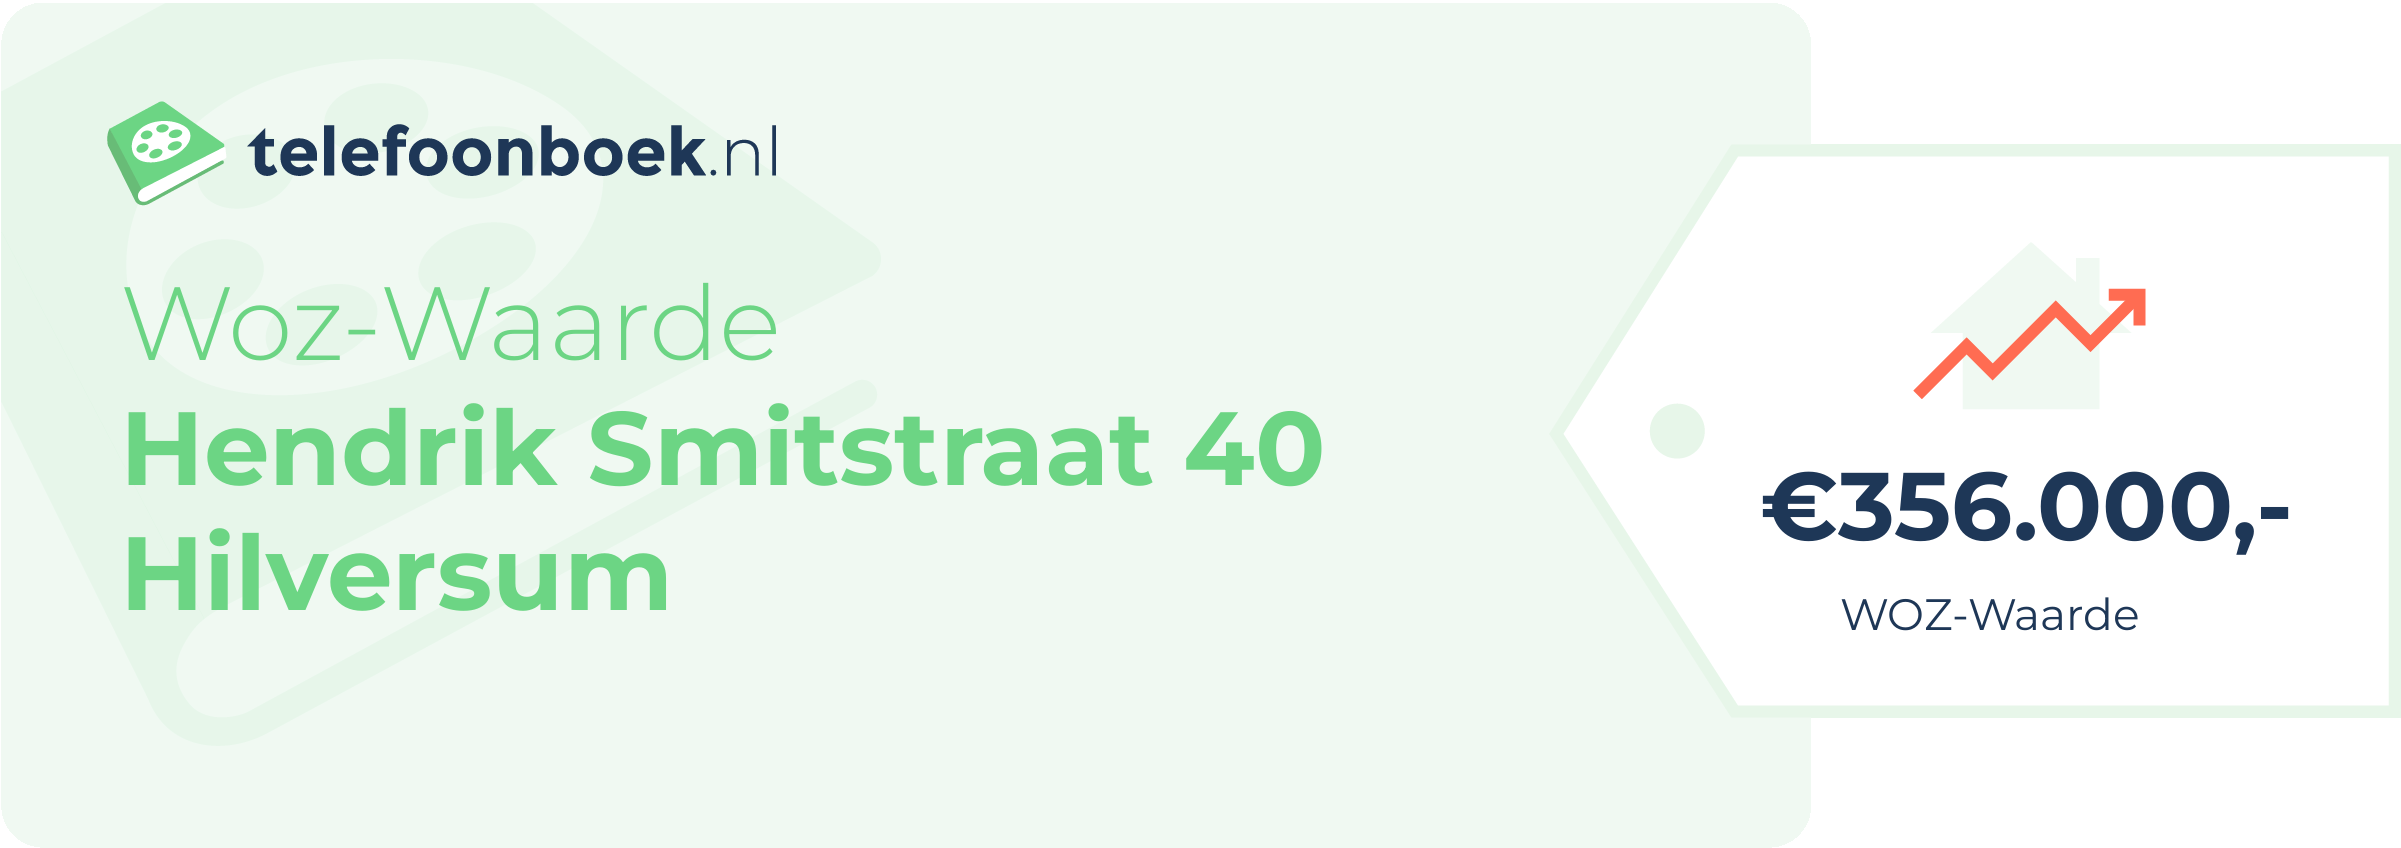 WOZ-waarde Hendrik Smitstraat 40 Hilversum